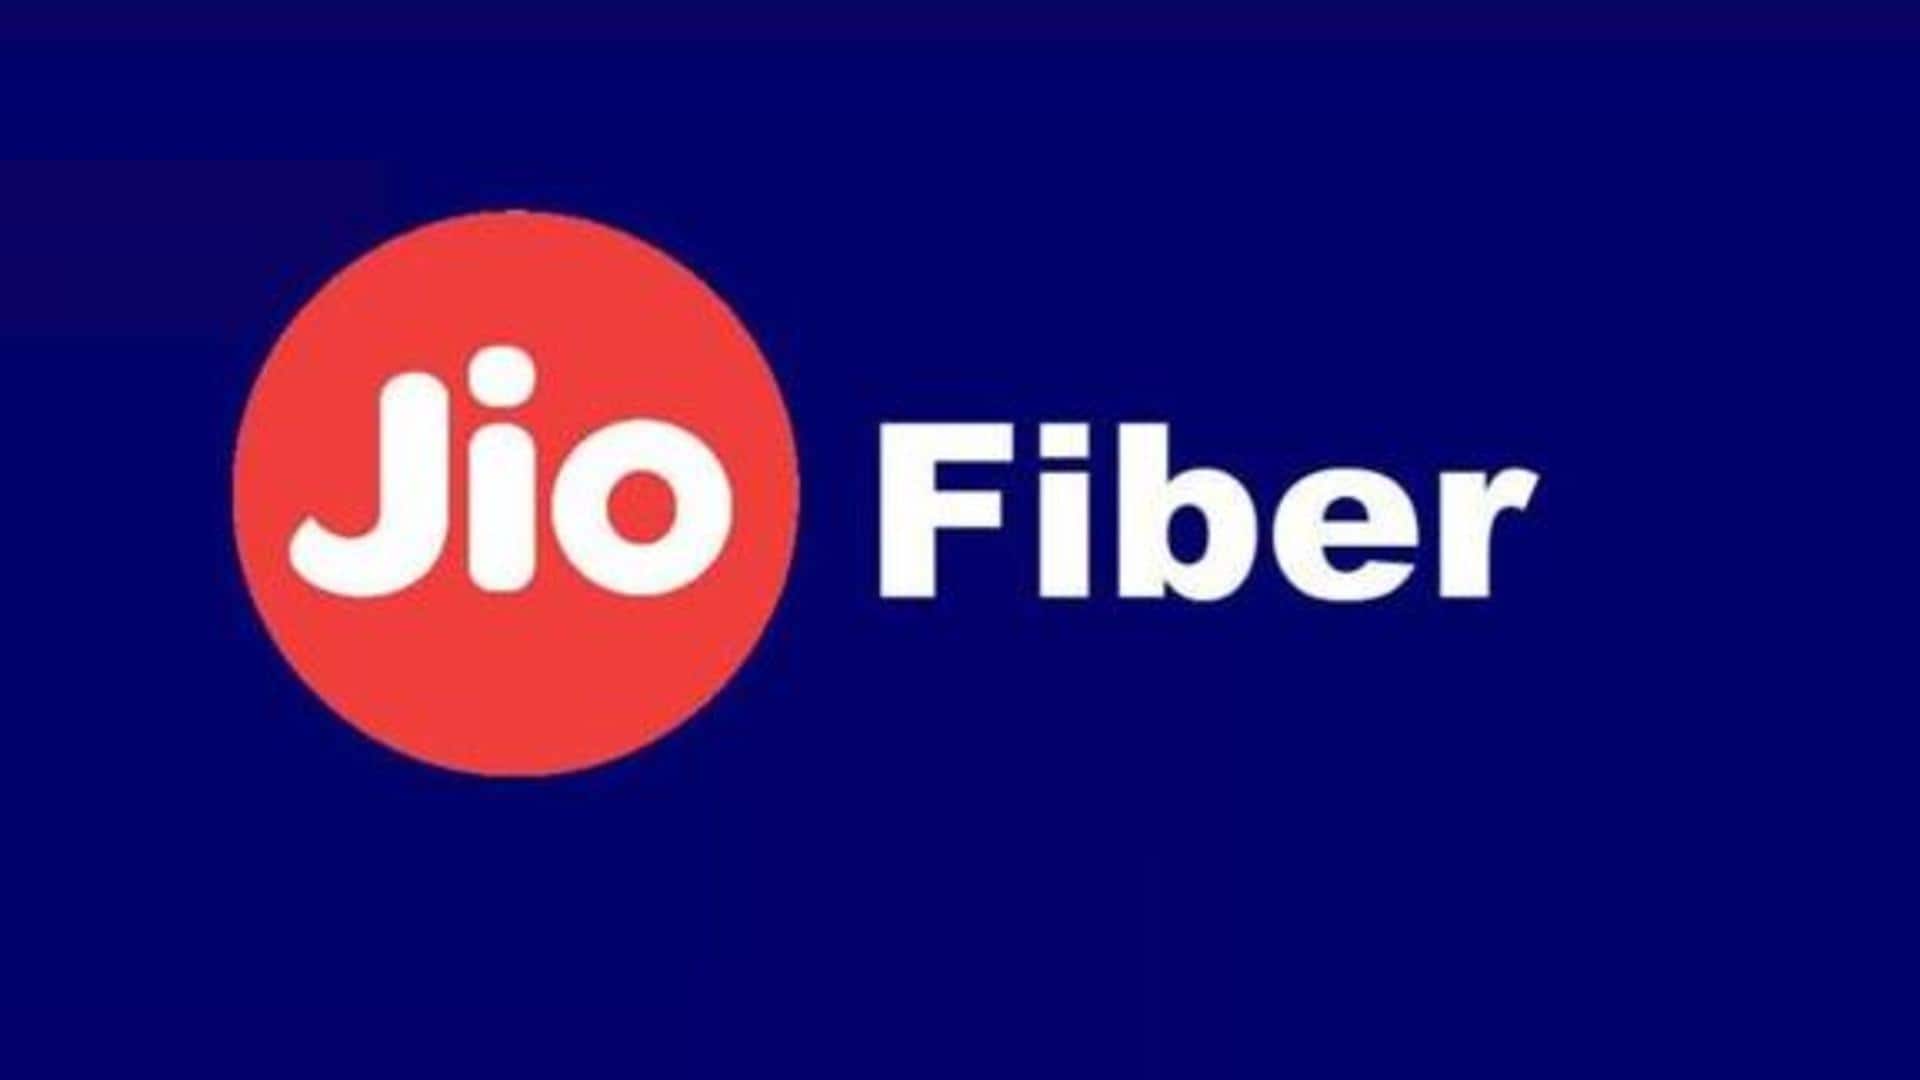 Jio launches JioFiber Backup plan at Rs. 198: Check benefits